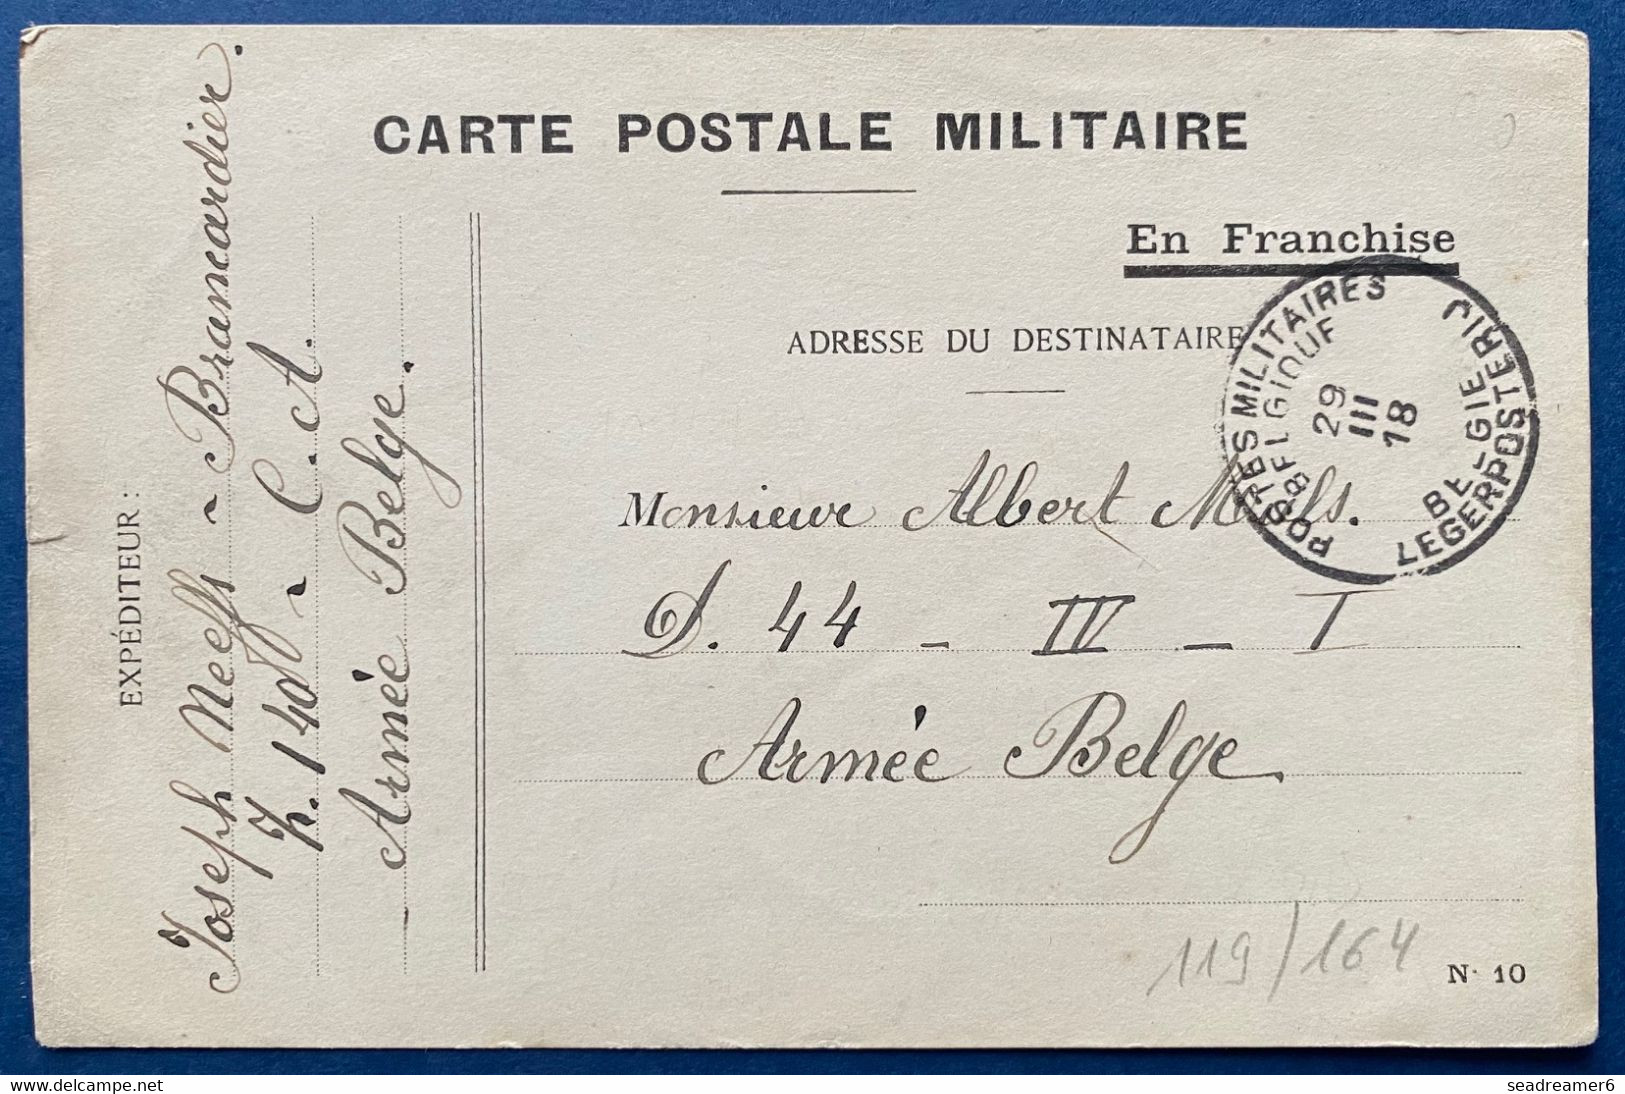 Carte Postale Militaire En Franchise Type N°10 Obl Dateur 29 Mars 1918 Postes Militaires Belgique PMB Pour Un Soldat TTB - Army: Belgium